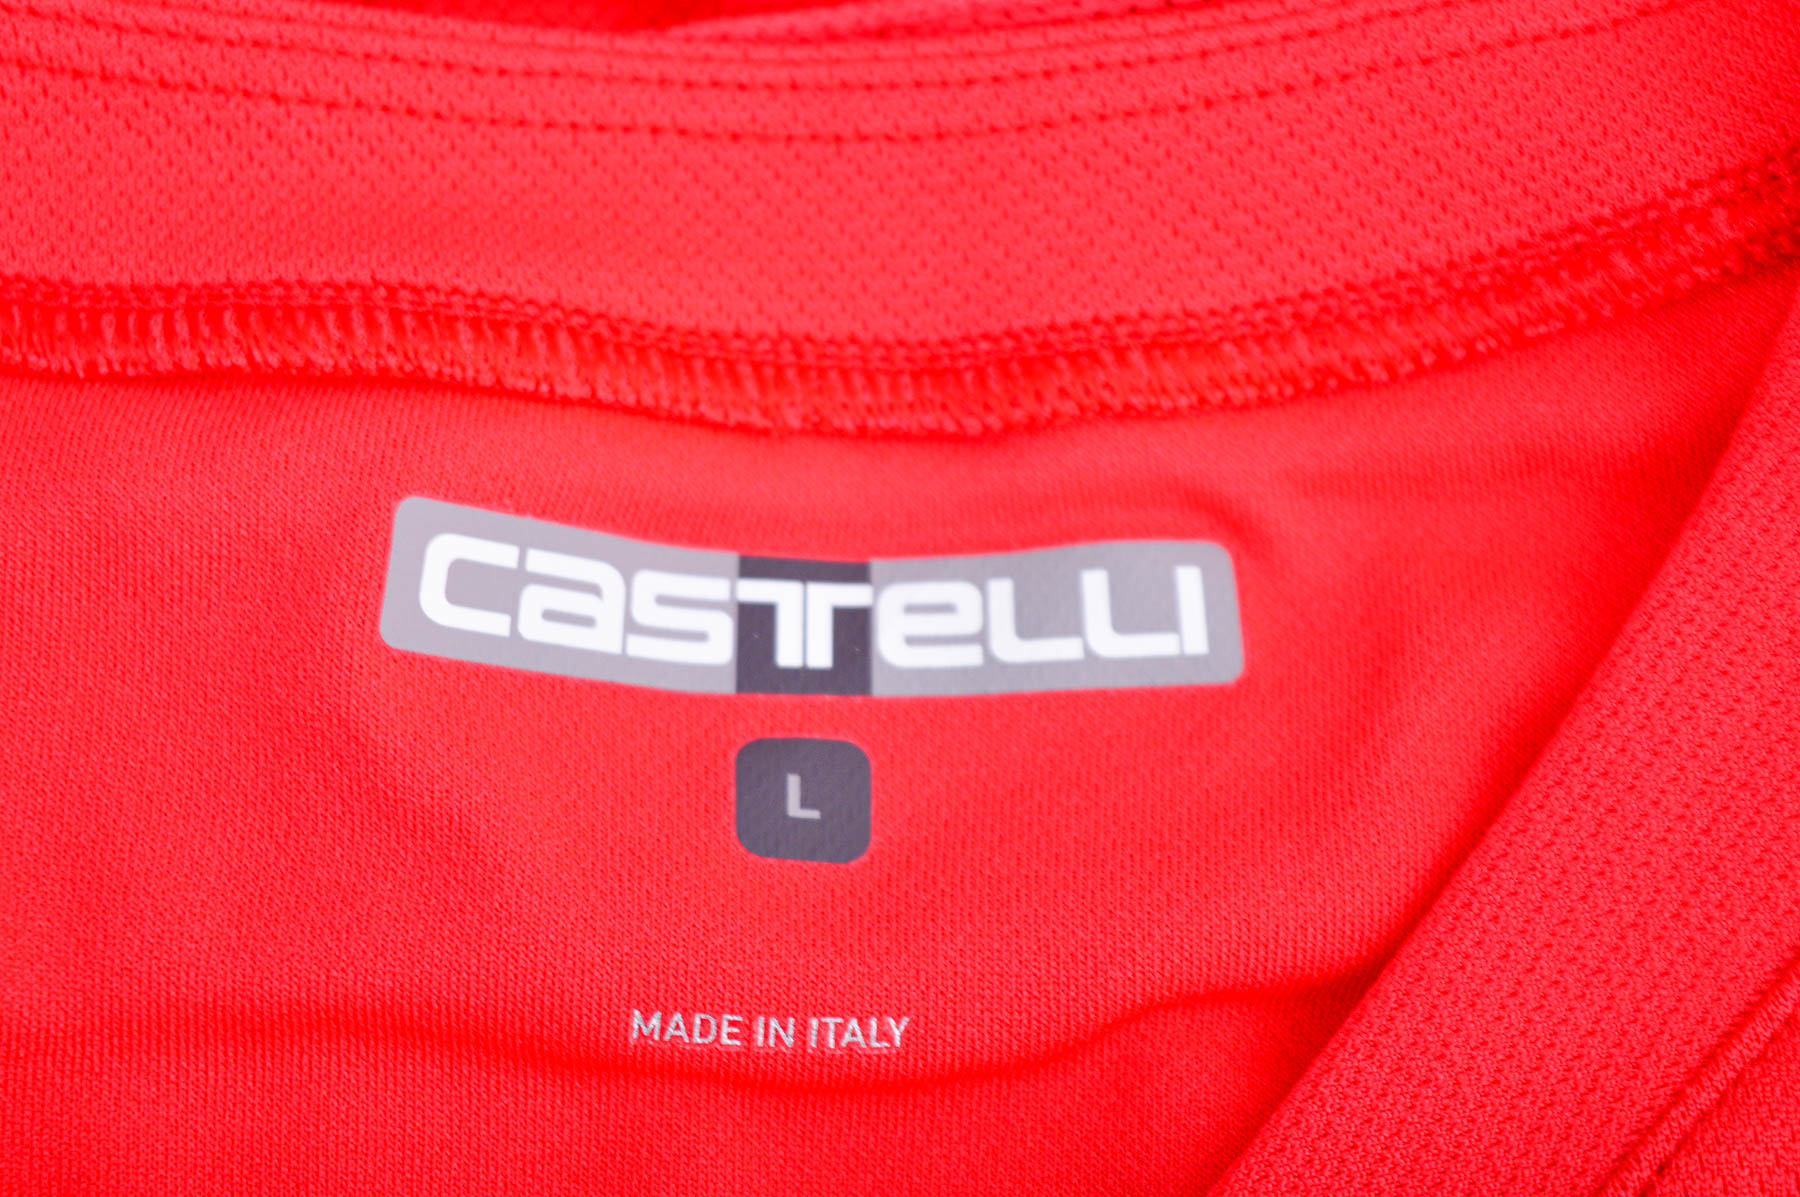 Γυναικείο γιλέκο Για ποδηλασία - Castelli - 2